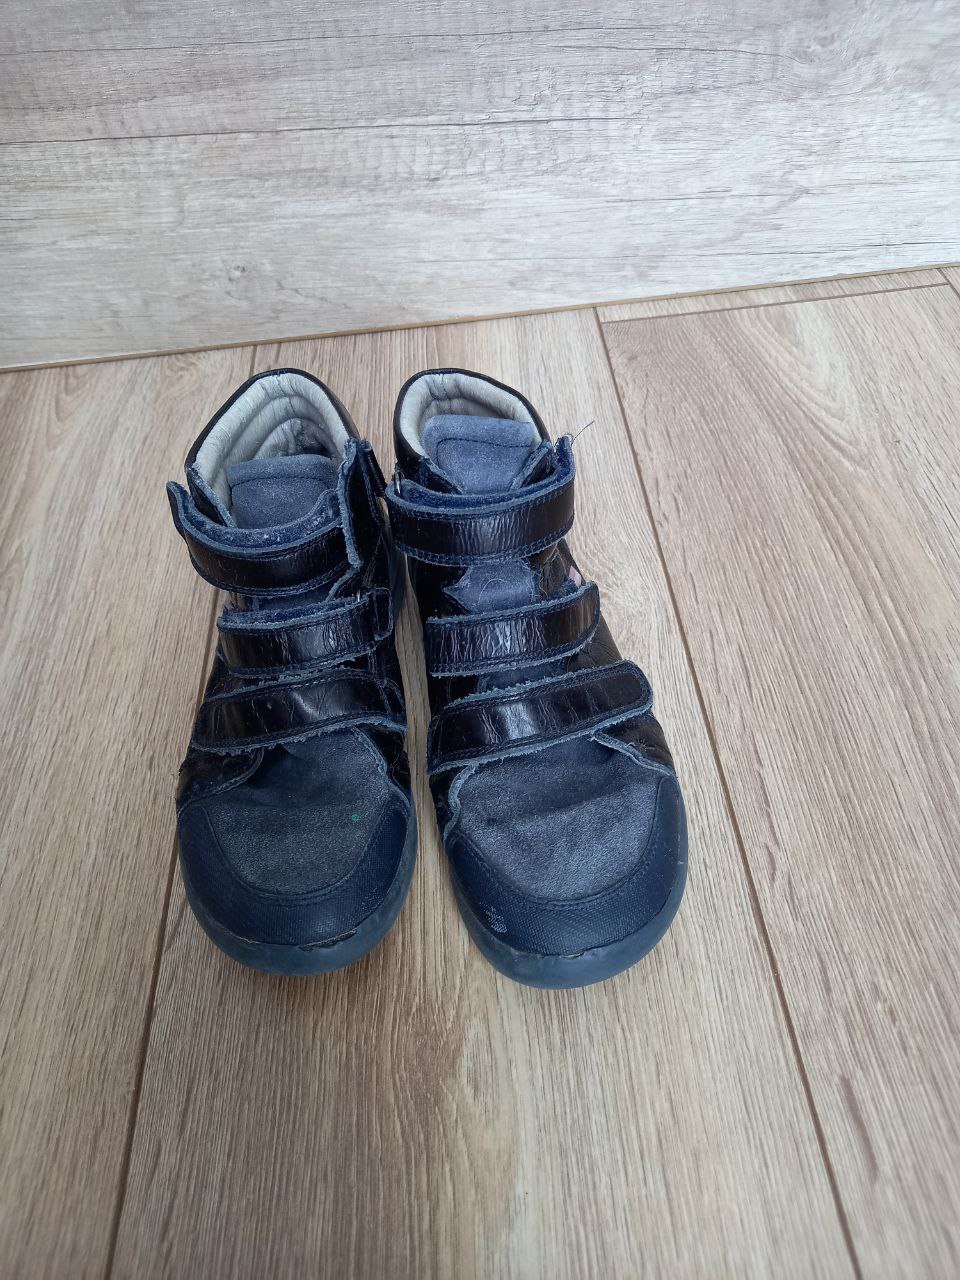 Фото  Детские ботинки темного цвета